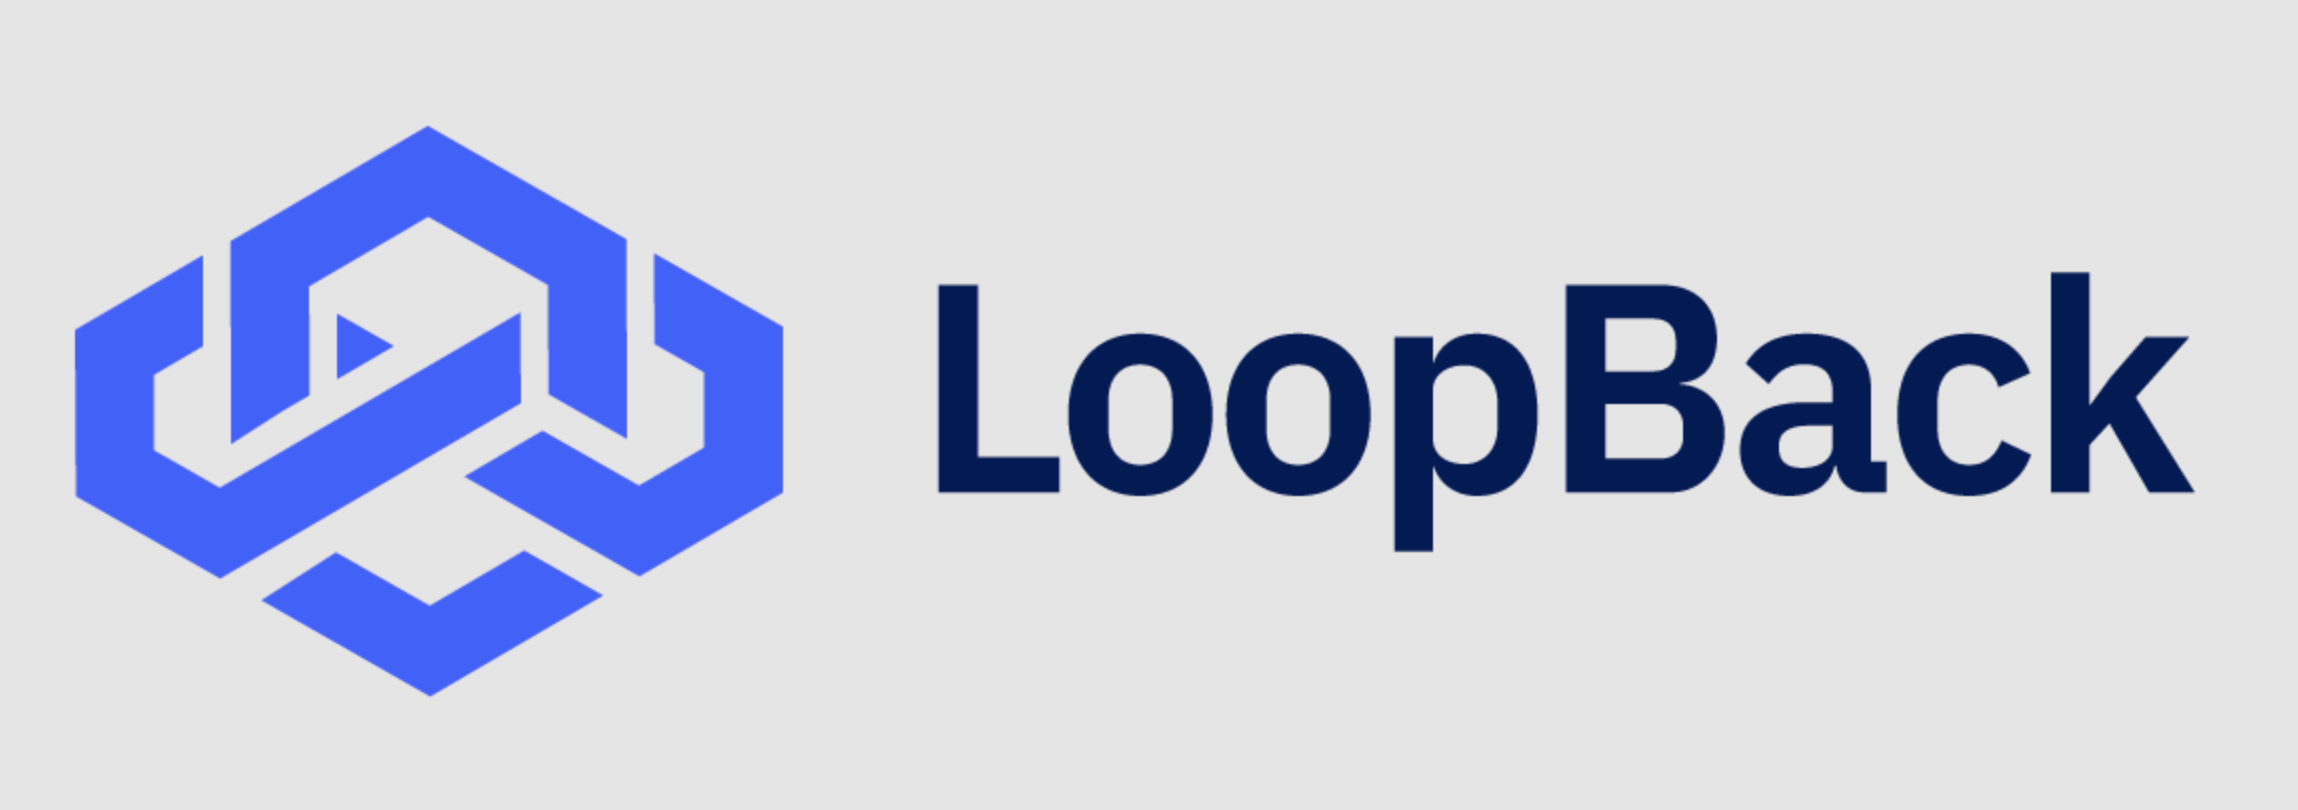 Pourquoi loopback est performant pour générer une API CRUD ?